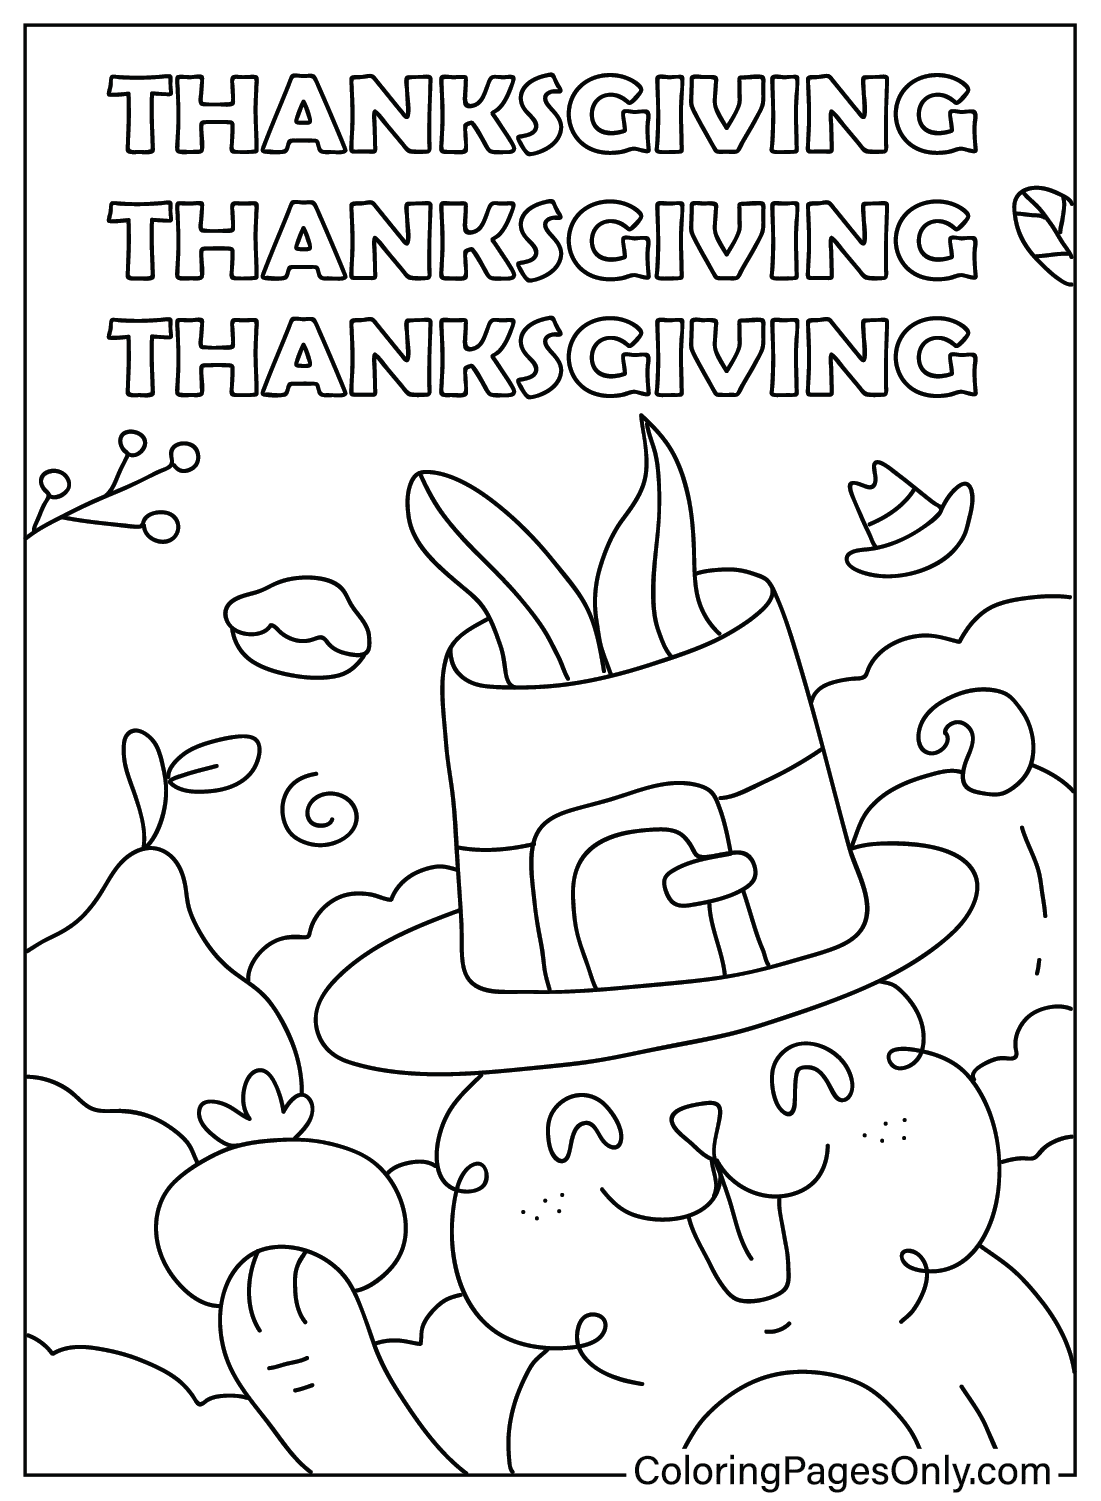 Thanksgiving-Malvorlagen für Erwachsene